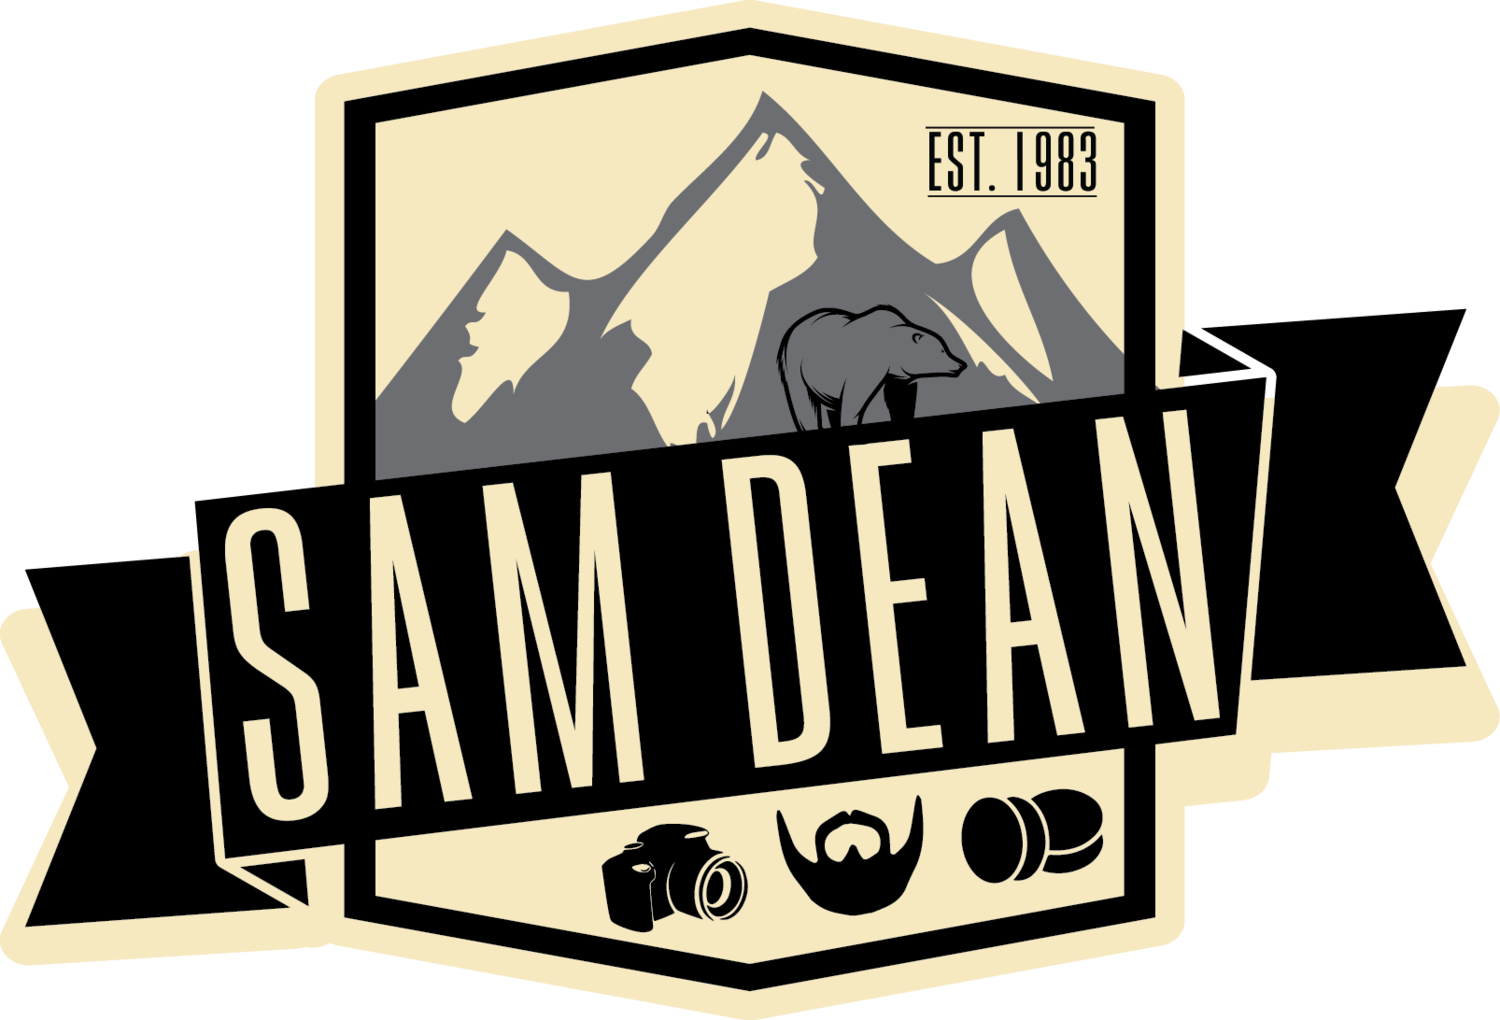 Sam Dean / Drinker / Talker / Nerd / Entrepreneur